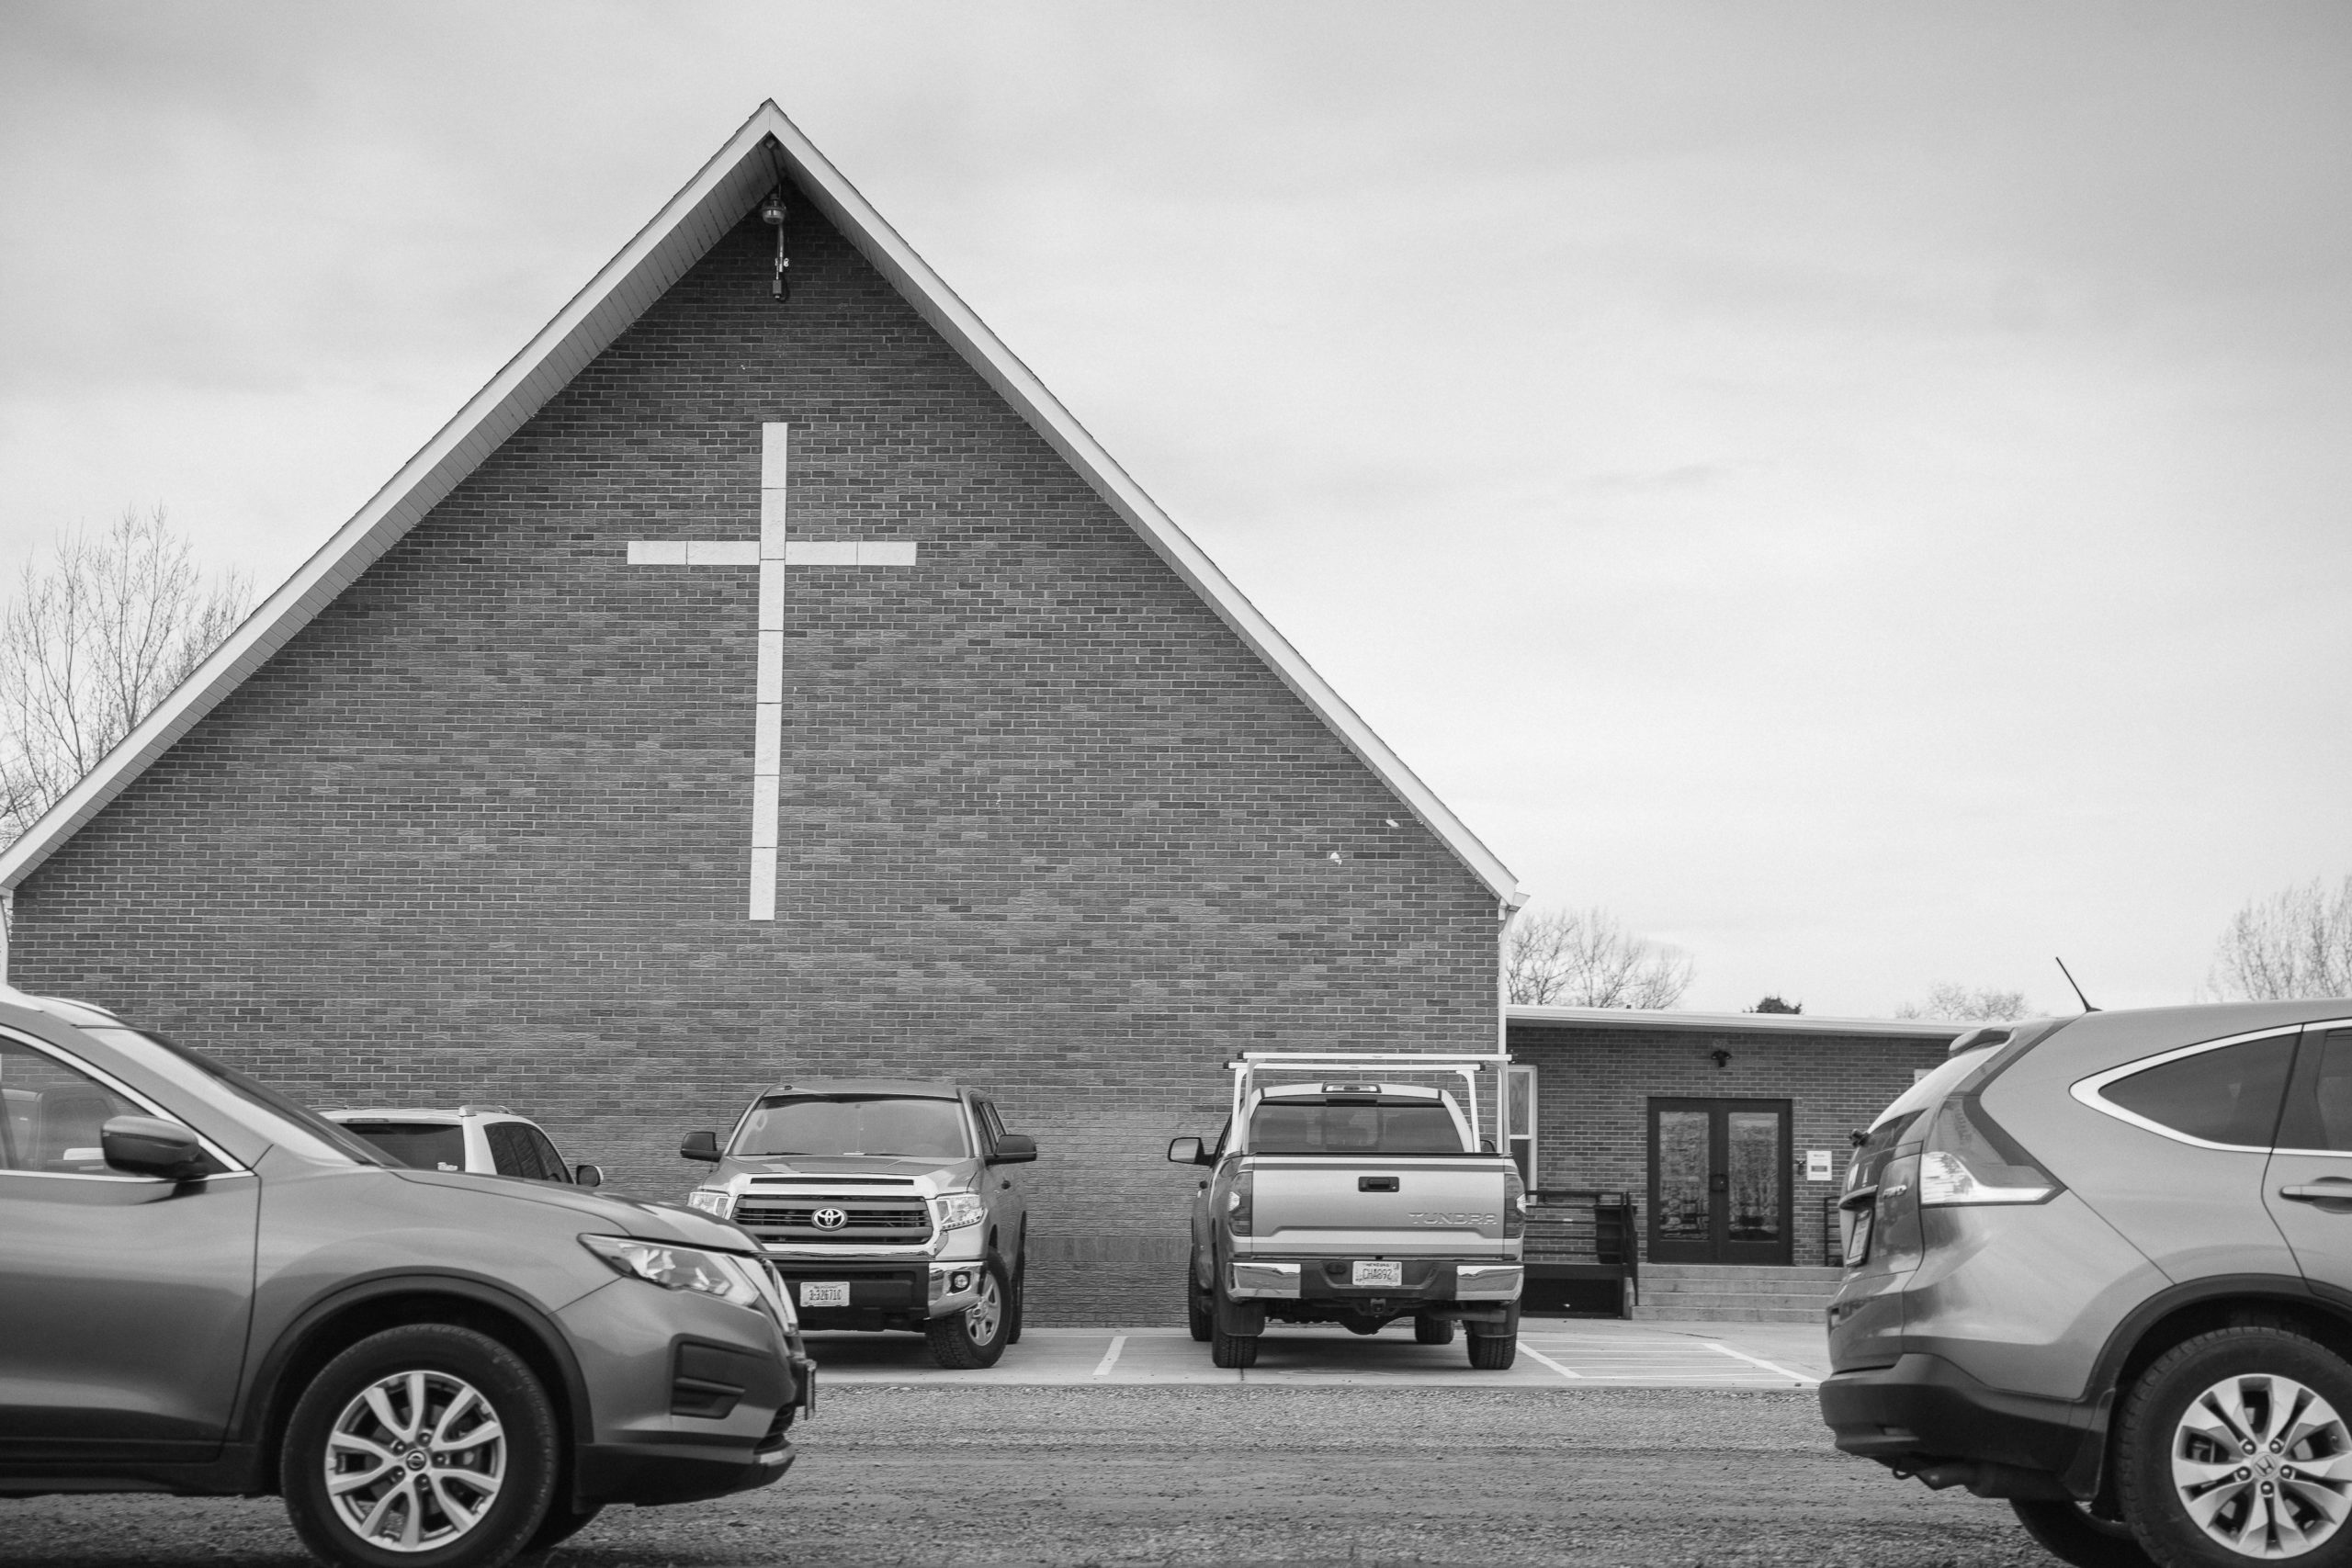 Faith Family Billings Church, Billings, MT